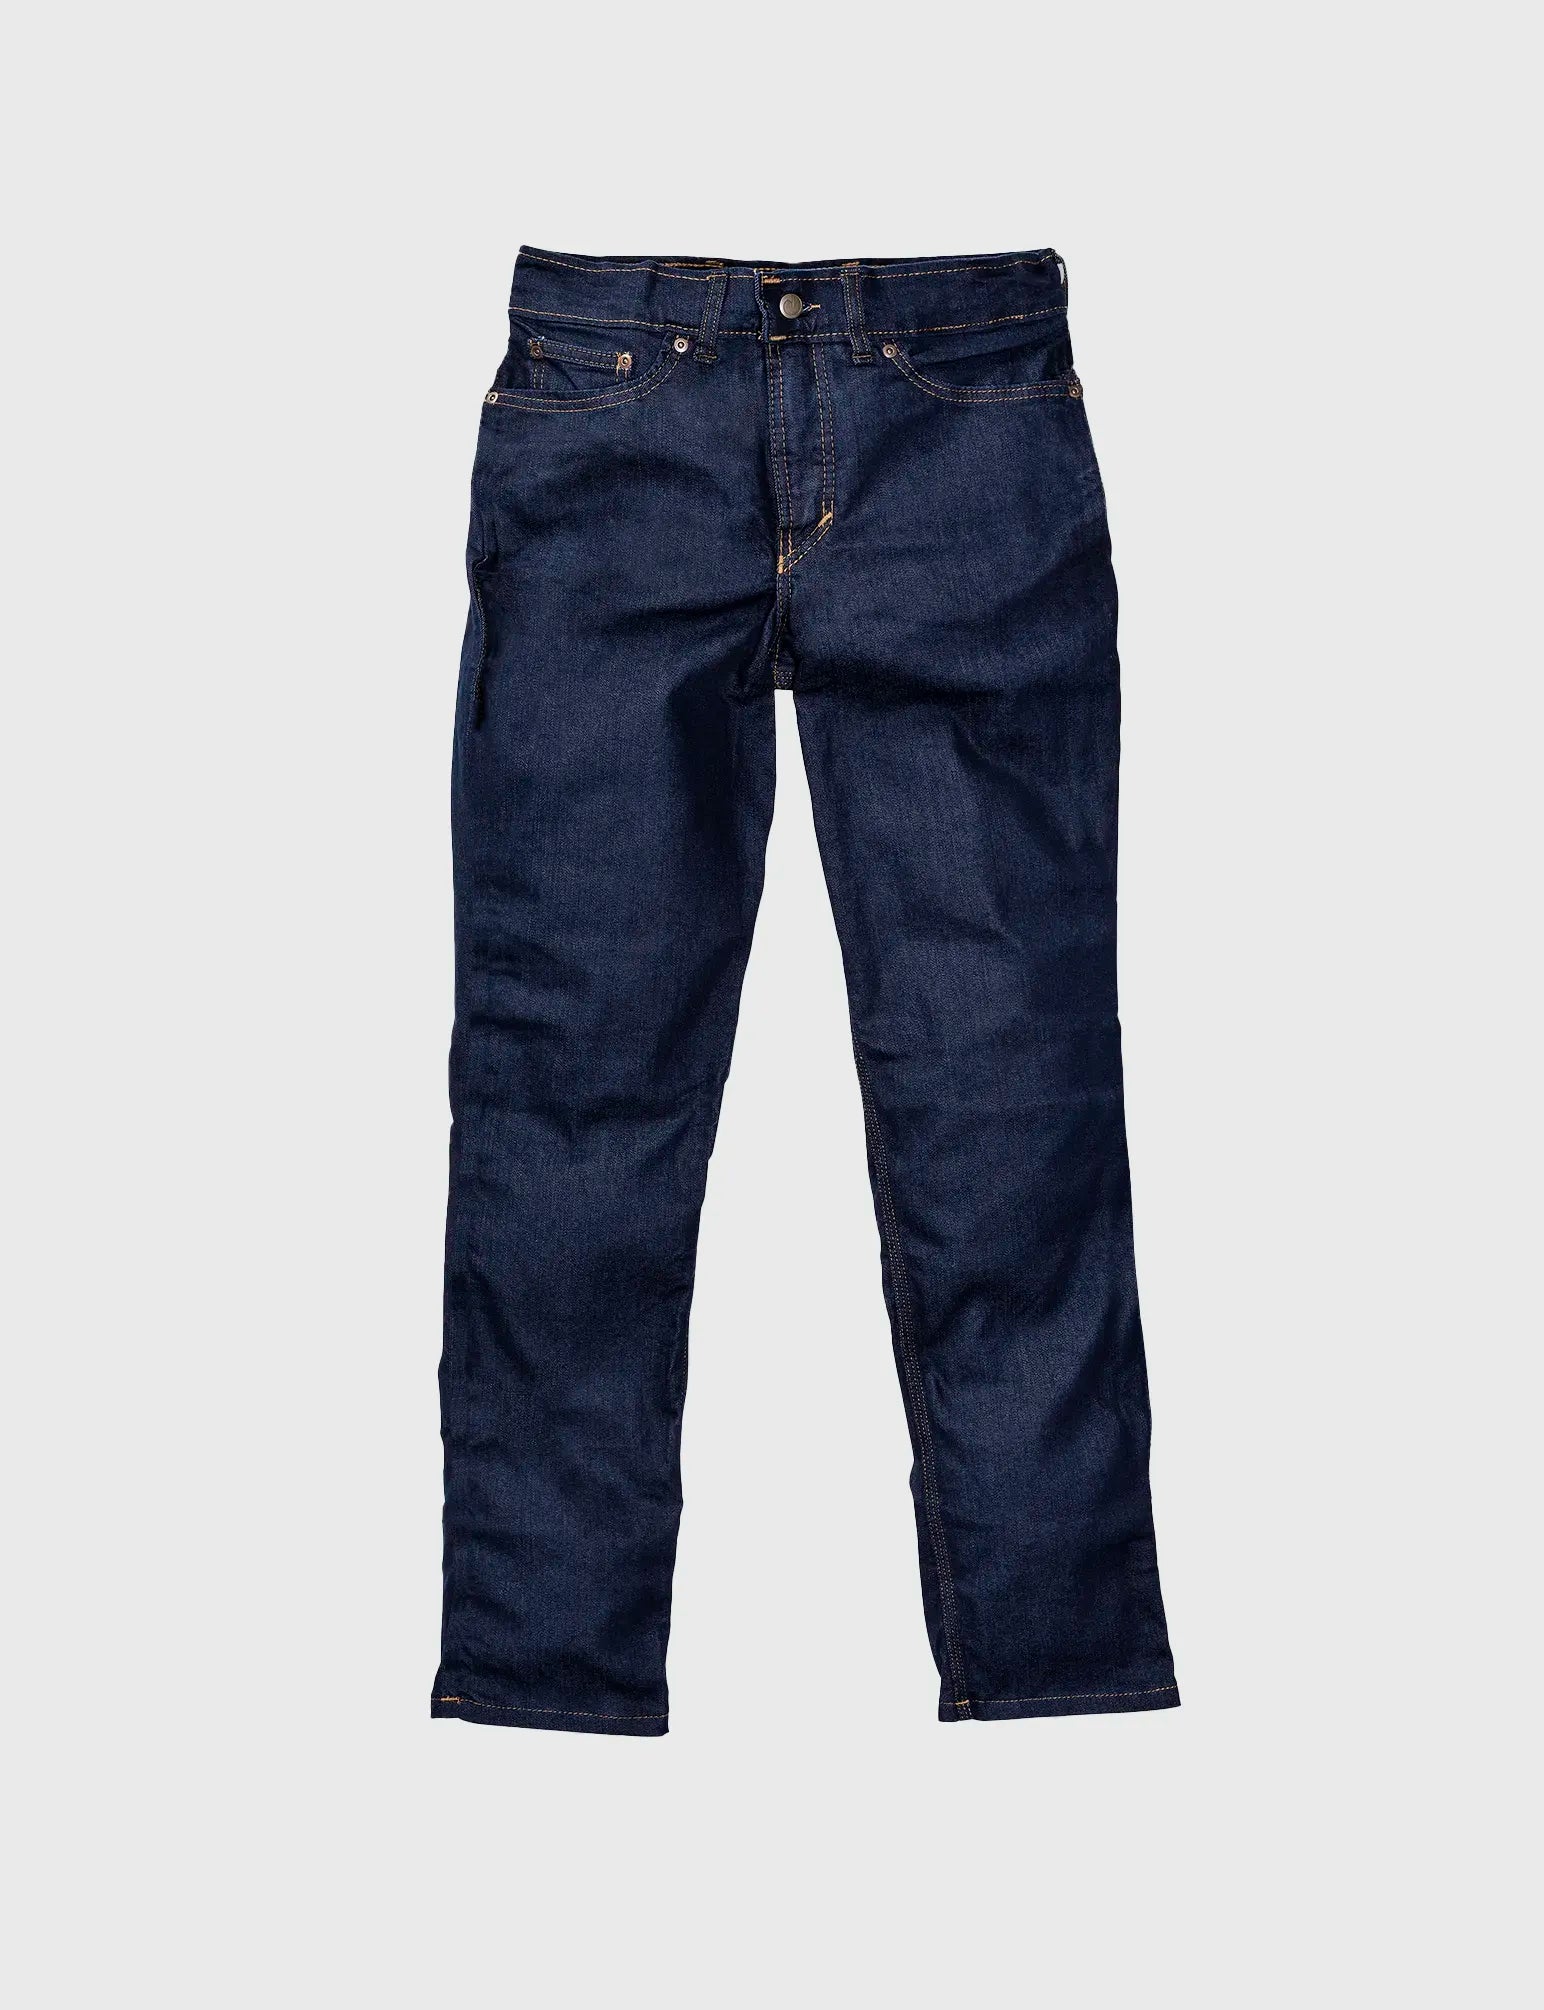 Men's Bottom Wears Online – Shop Jeans, Cargo Pants, Shorts & Joggers for  Men – Tim Paris